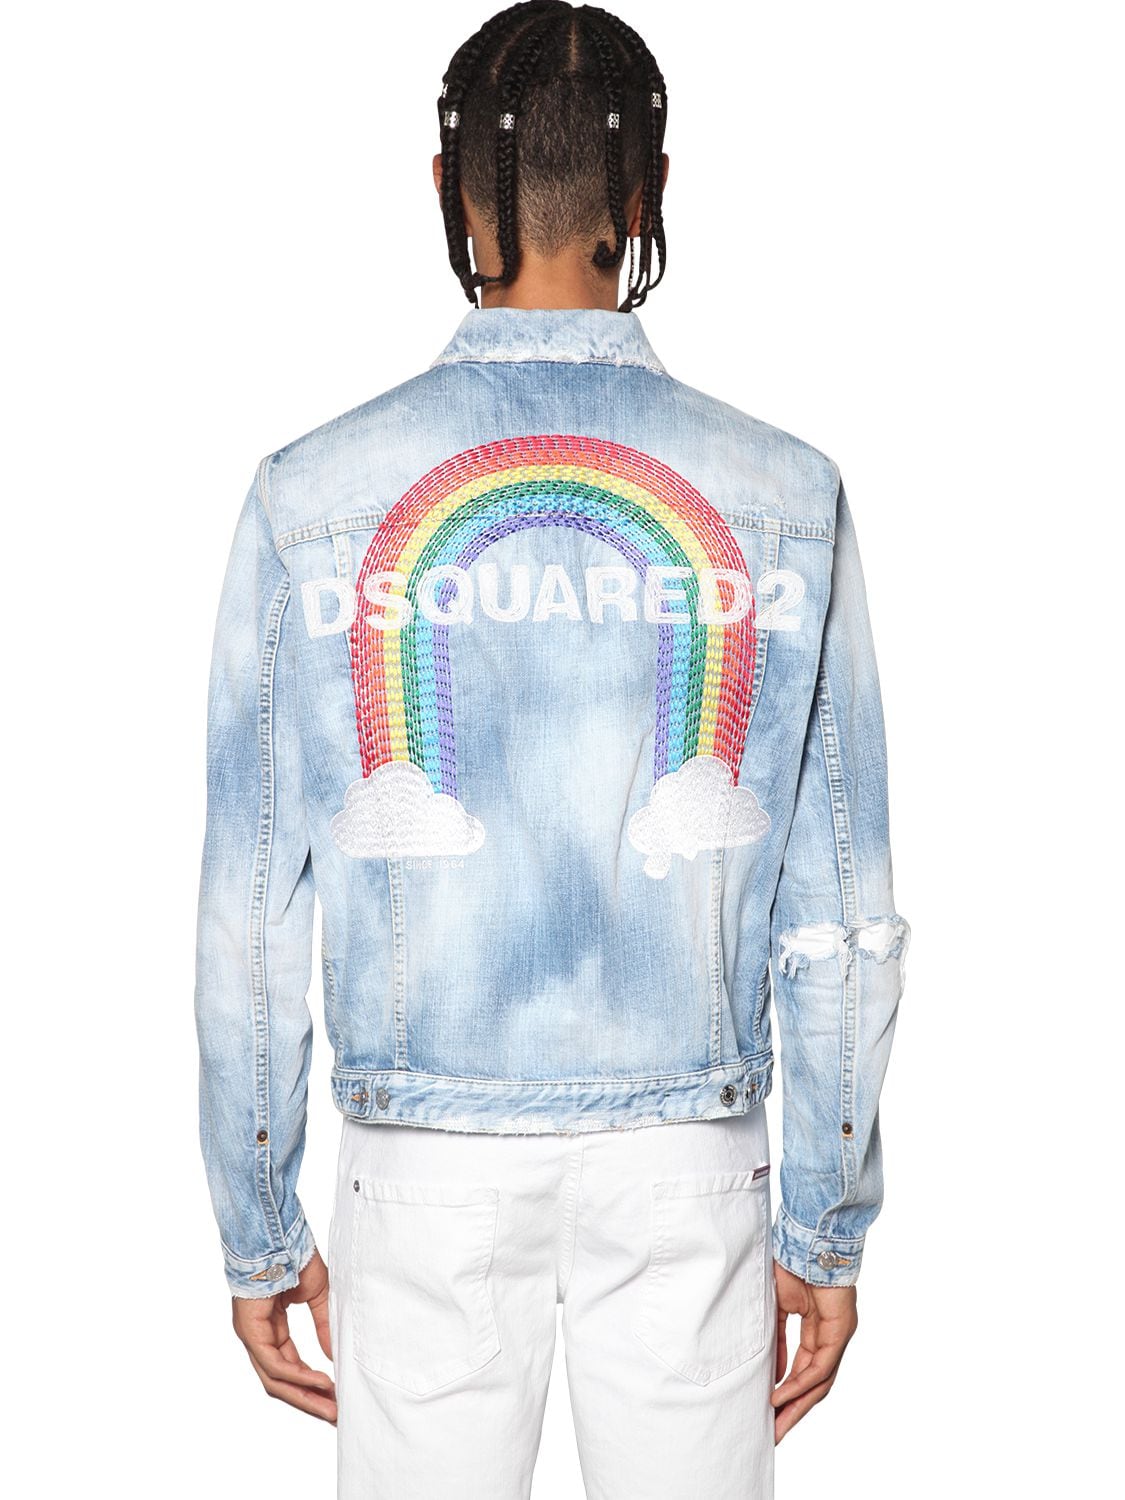 dsquared2 jacket sizing